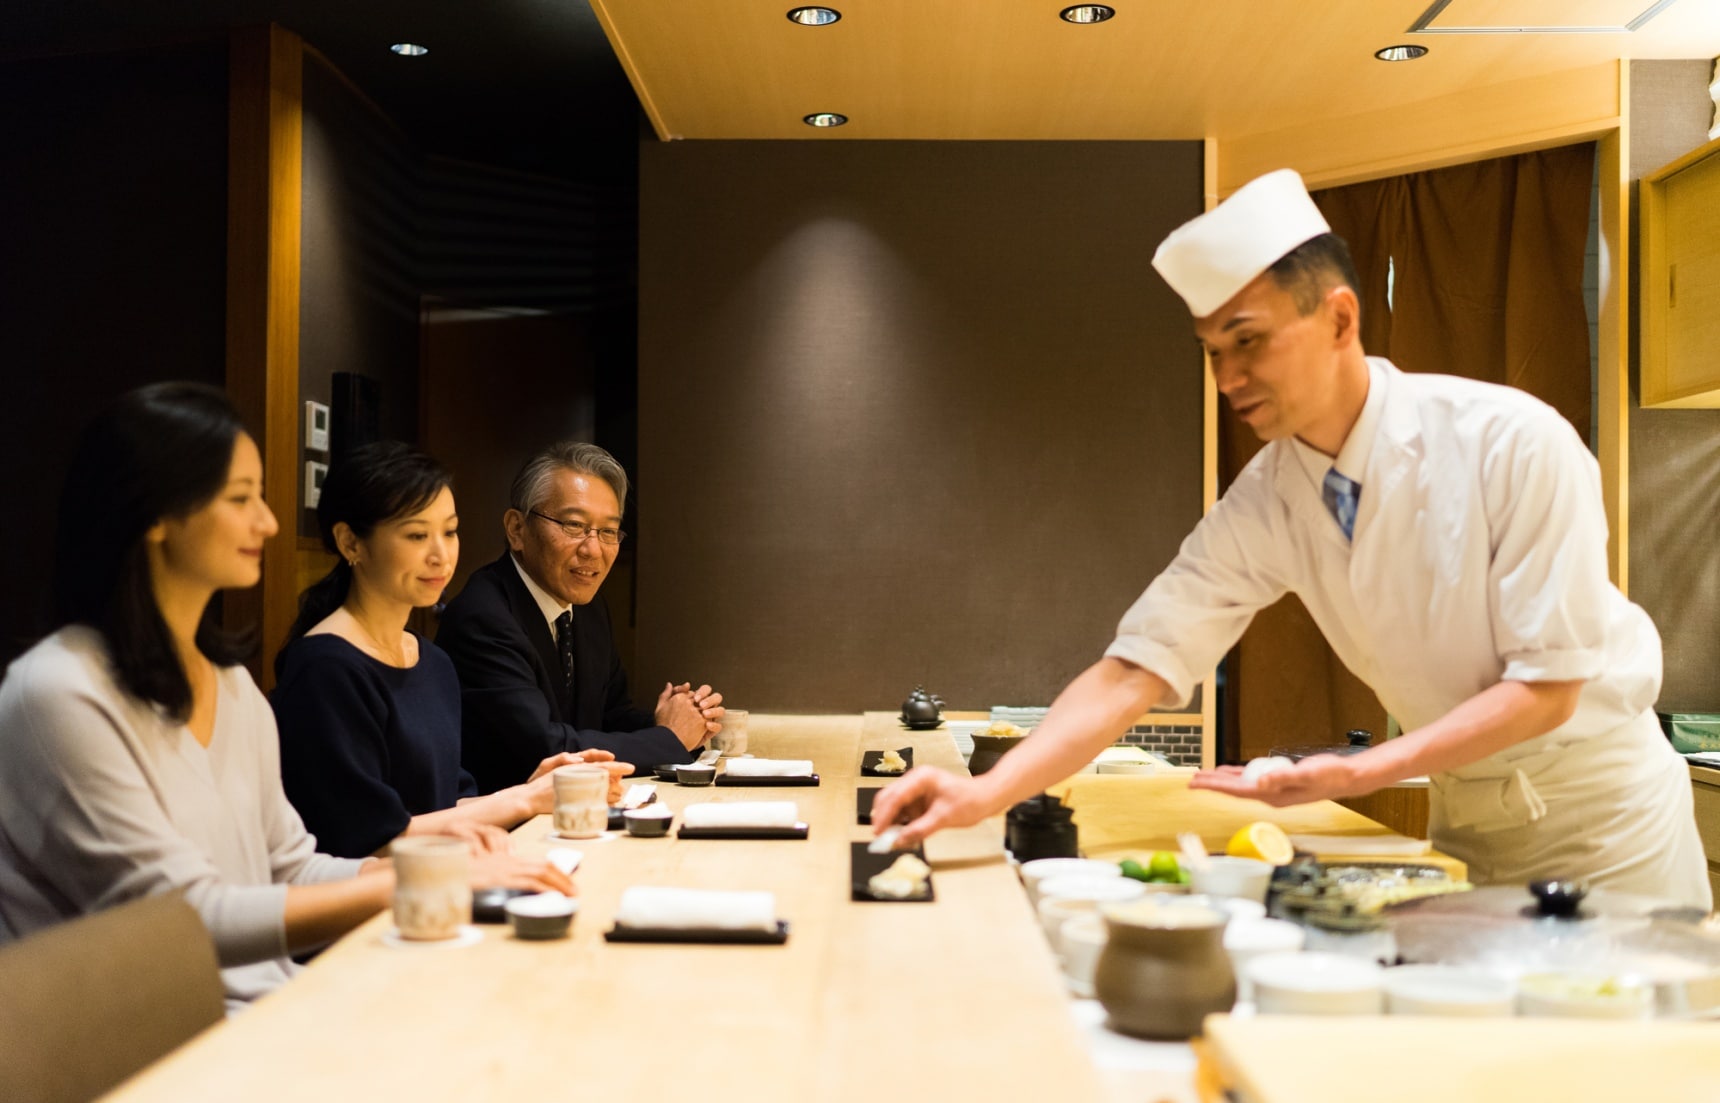 【深度日本】 人生就該享受一次無菜單料理！對料理職人完全信賴的術語「Omakase（おまかせ）」